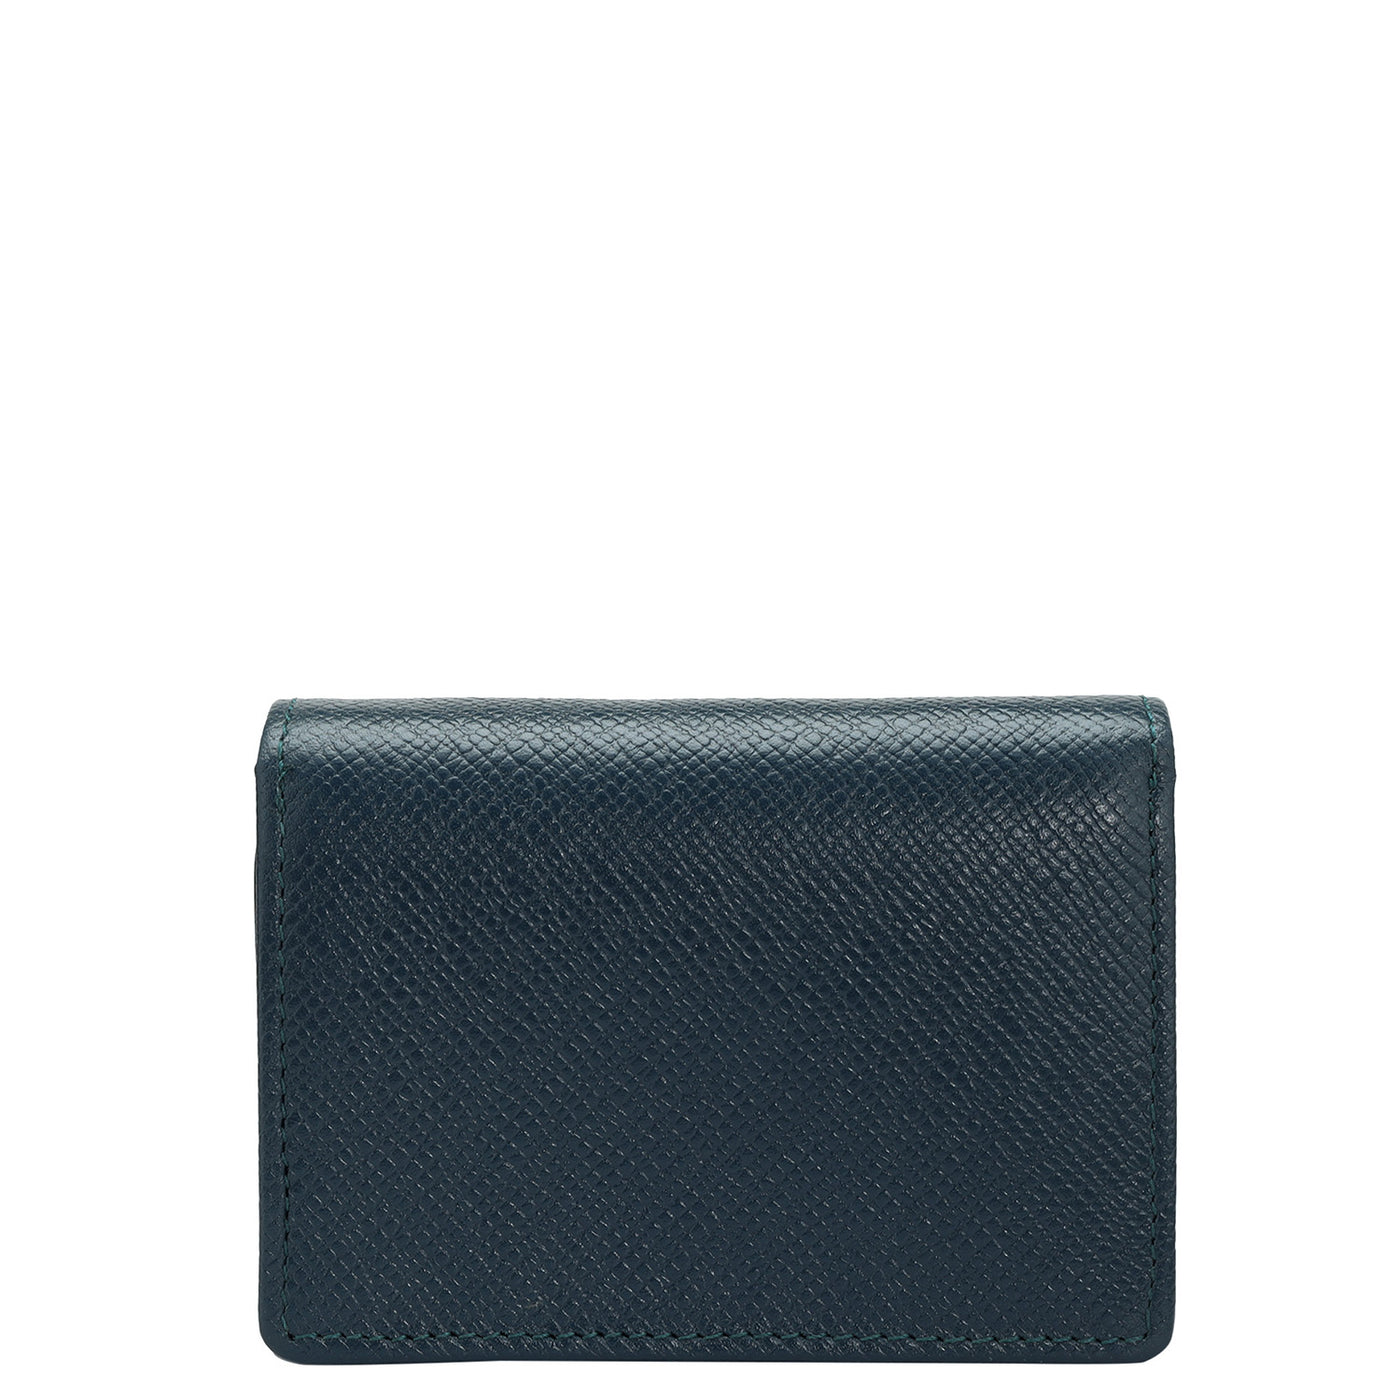 Franzy Leather Ladies Wallet - Ocean